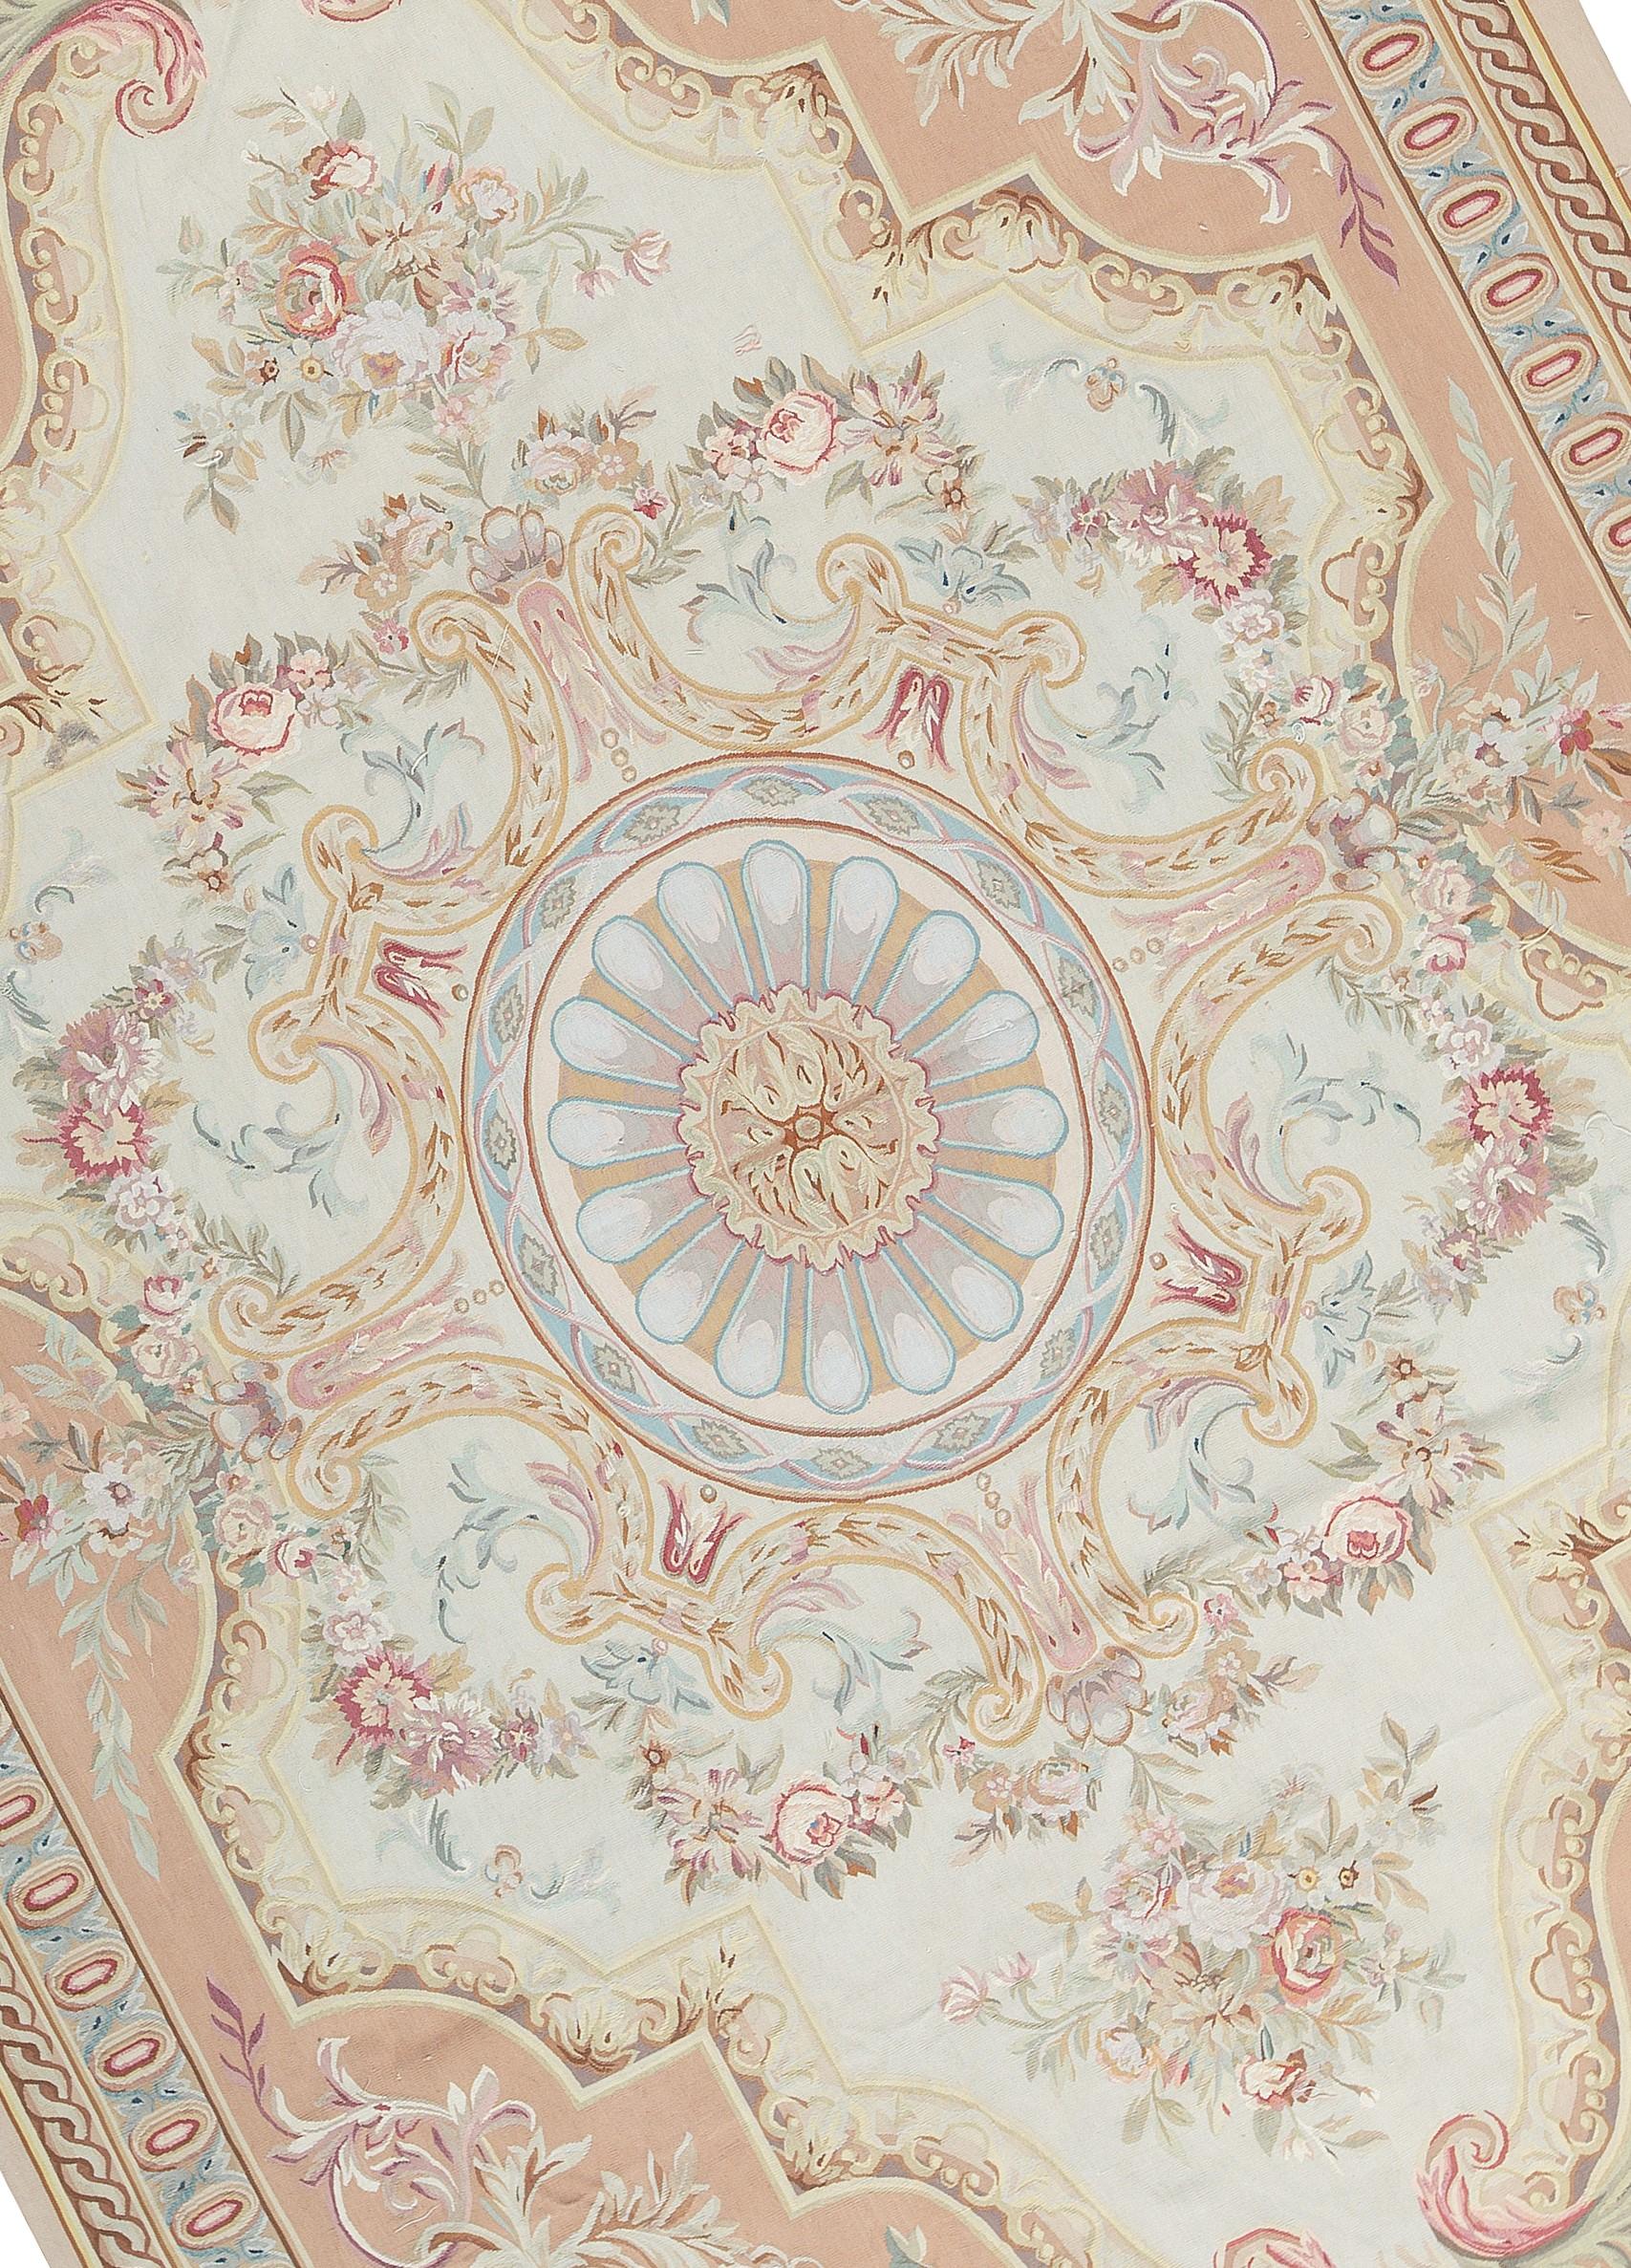 récréation tissée à la main des tapis d'Aubusson classiques français à tissage plat que l'on trouve dans les maisons et les palais les plus raffinés depuis la fin du XVIIe siècle. Taille 10' x 14' 2''.